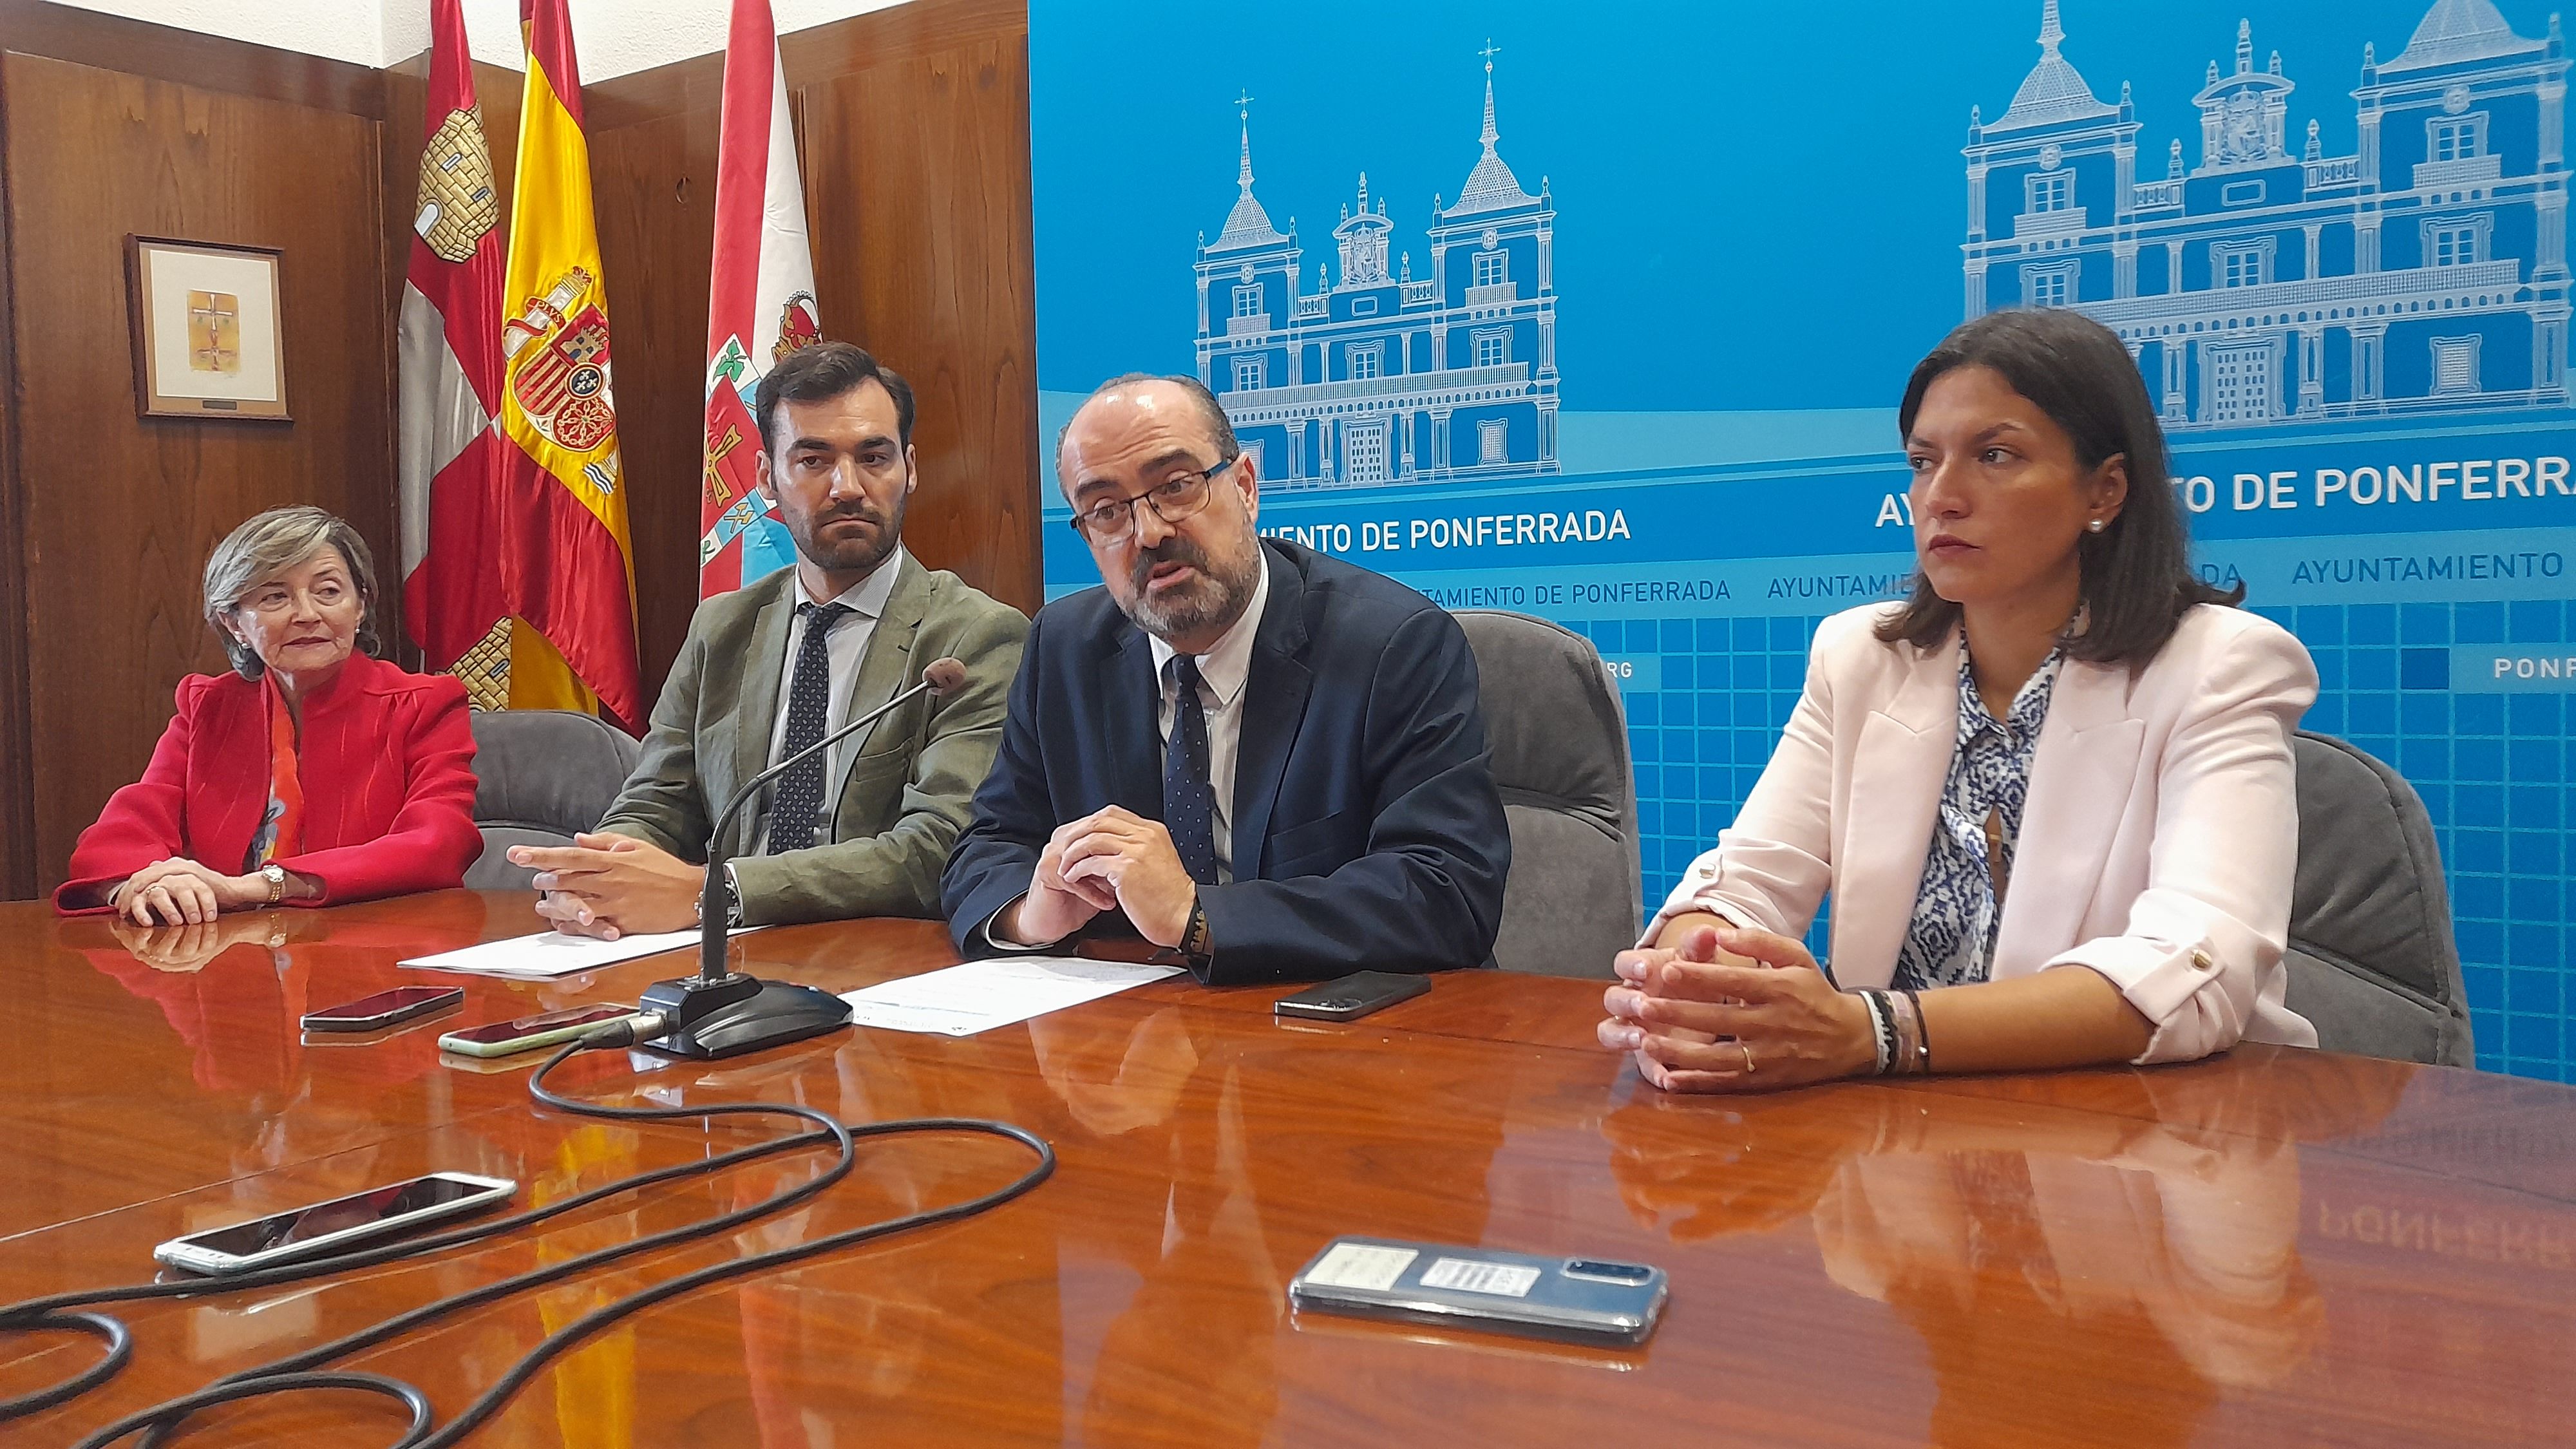 Rueda de prensa conjunta de los grupos municipales del PP en Ponferrada y León en el Ayuntamiento de Ponferrada. | MAR IGLESIAS